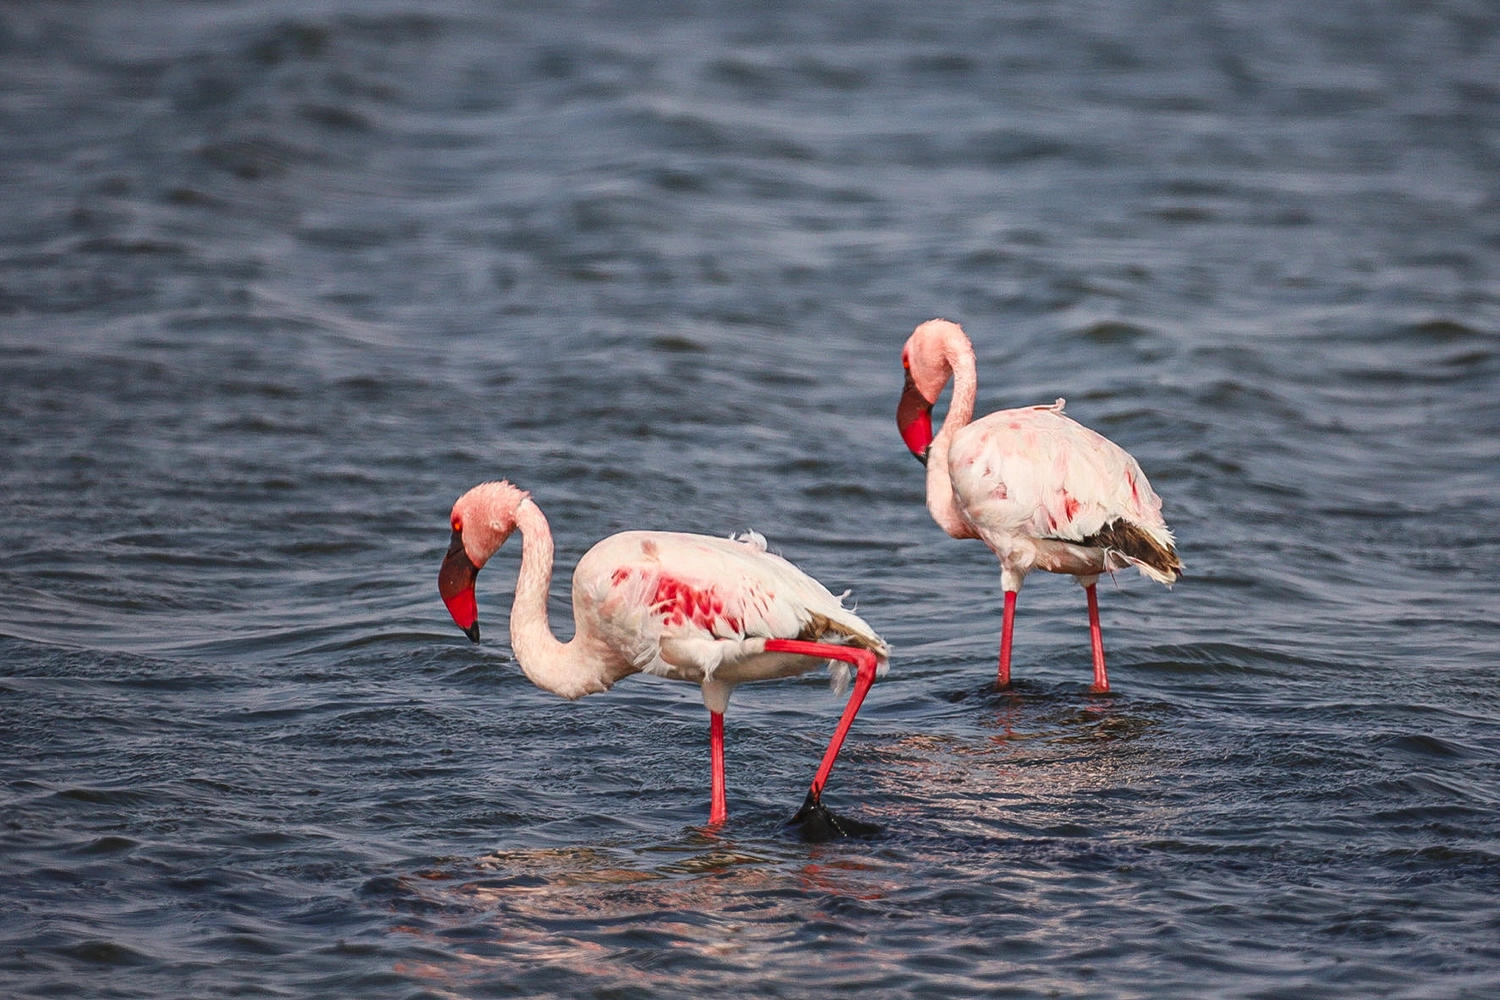 Nambia Sehenswürdigkeiten in der Flamingo Lagoon
© Marielle Janotta - My Travel Island